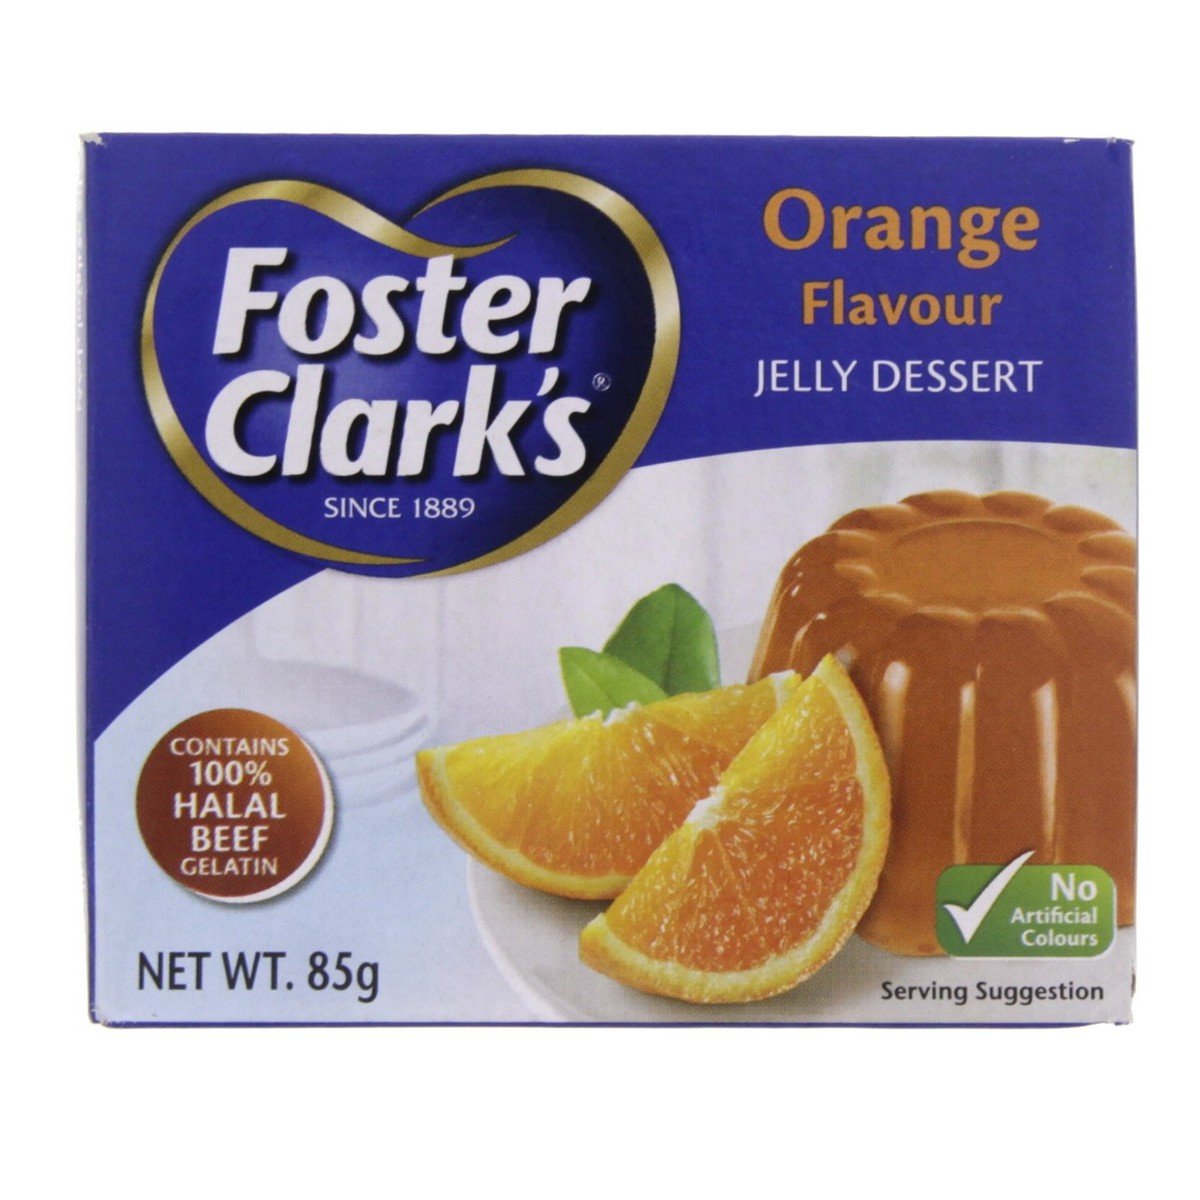 Foster Clark's Jelly Dessert Orange Flavour 12 x 85 g